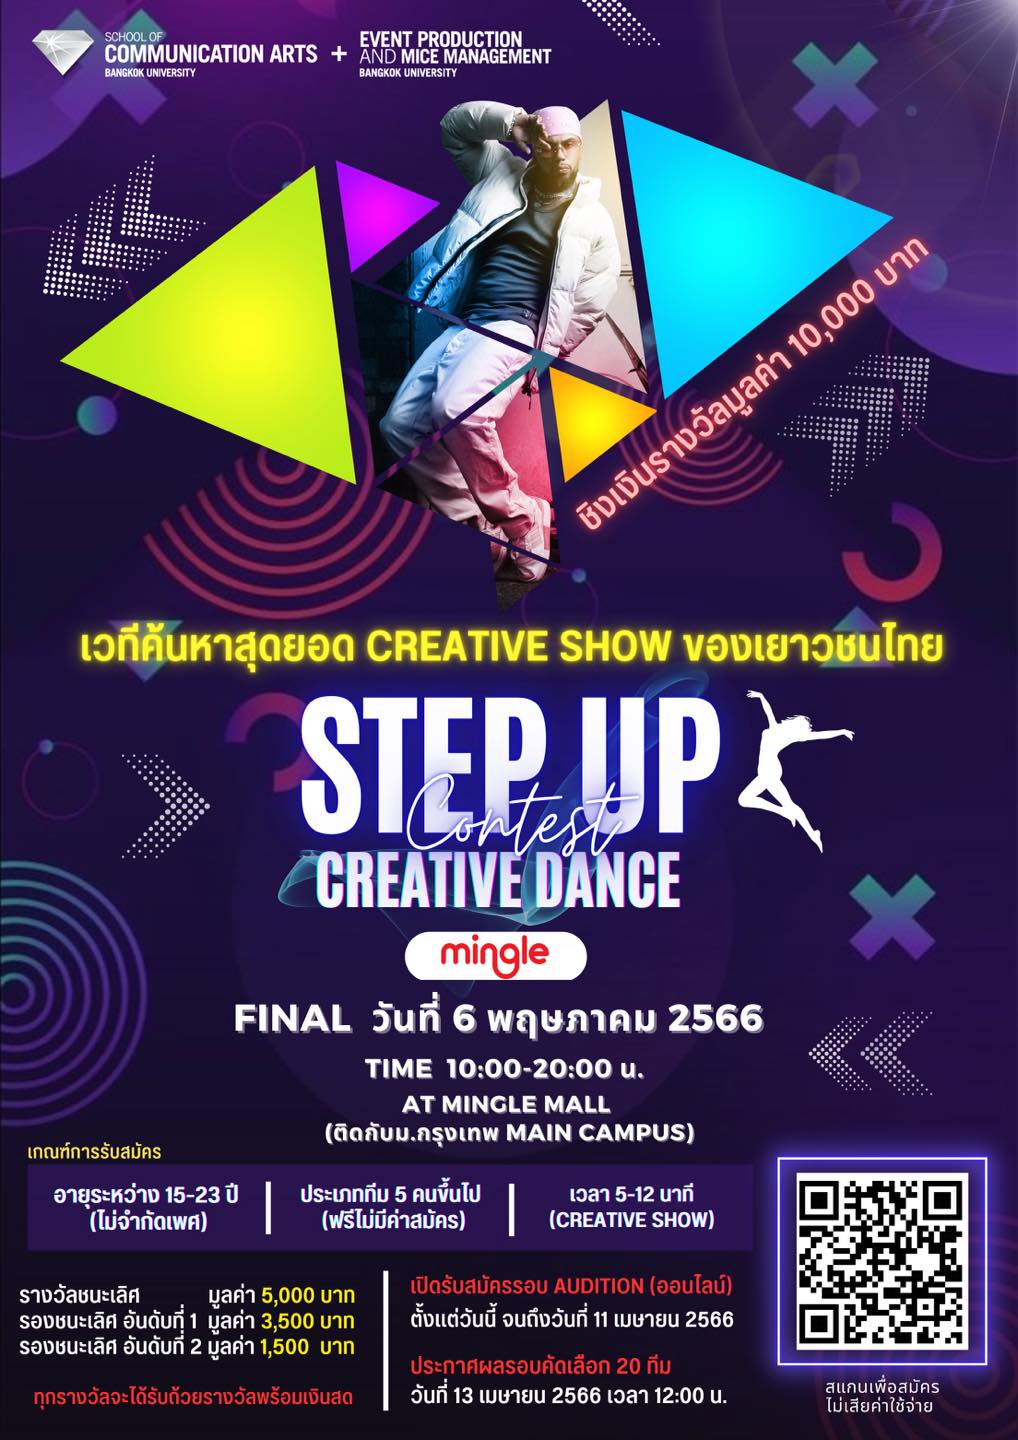 ขอเชิญร่วมแข่งขัน Creative Dance ใน “STEP UP Creative Dance Contest”